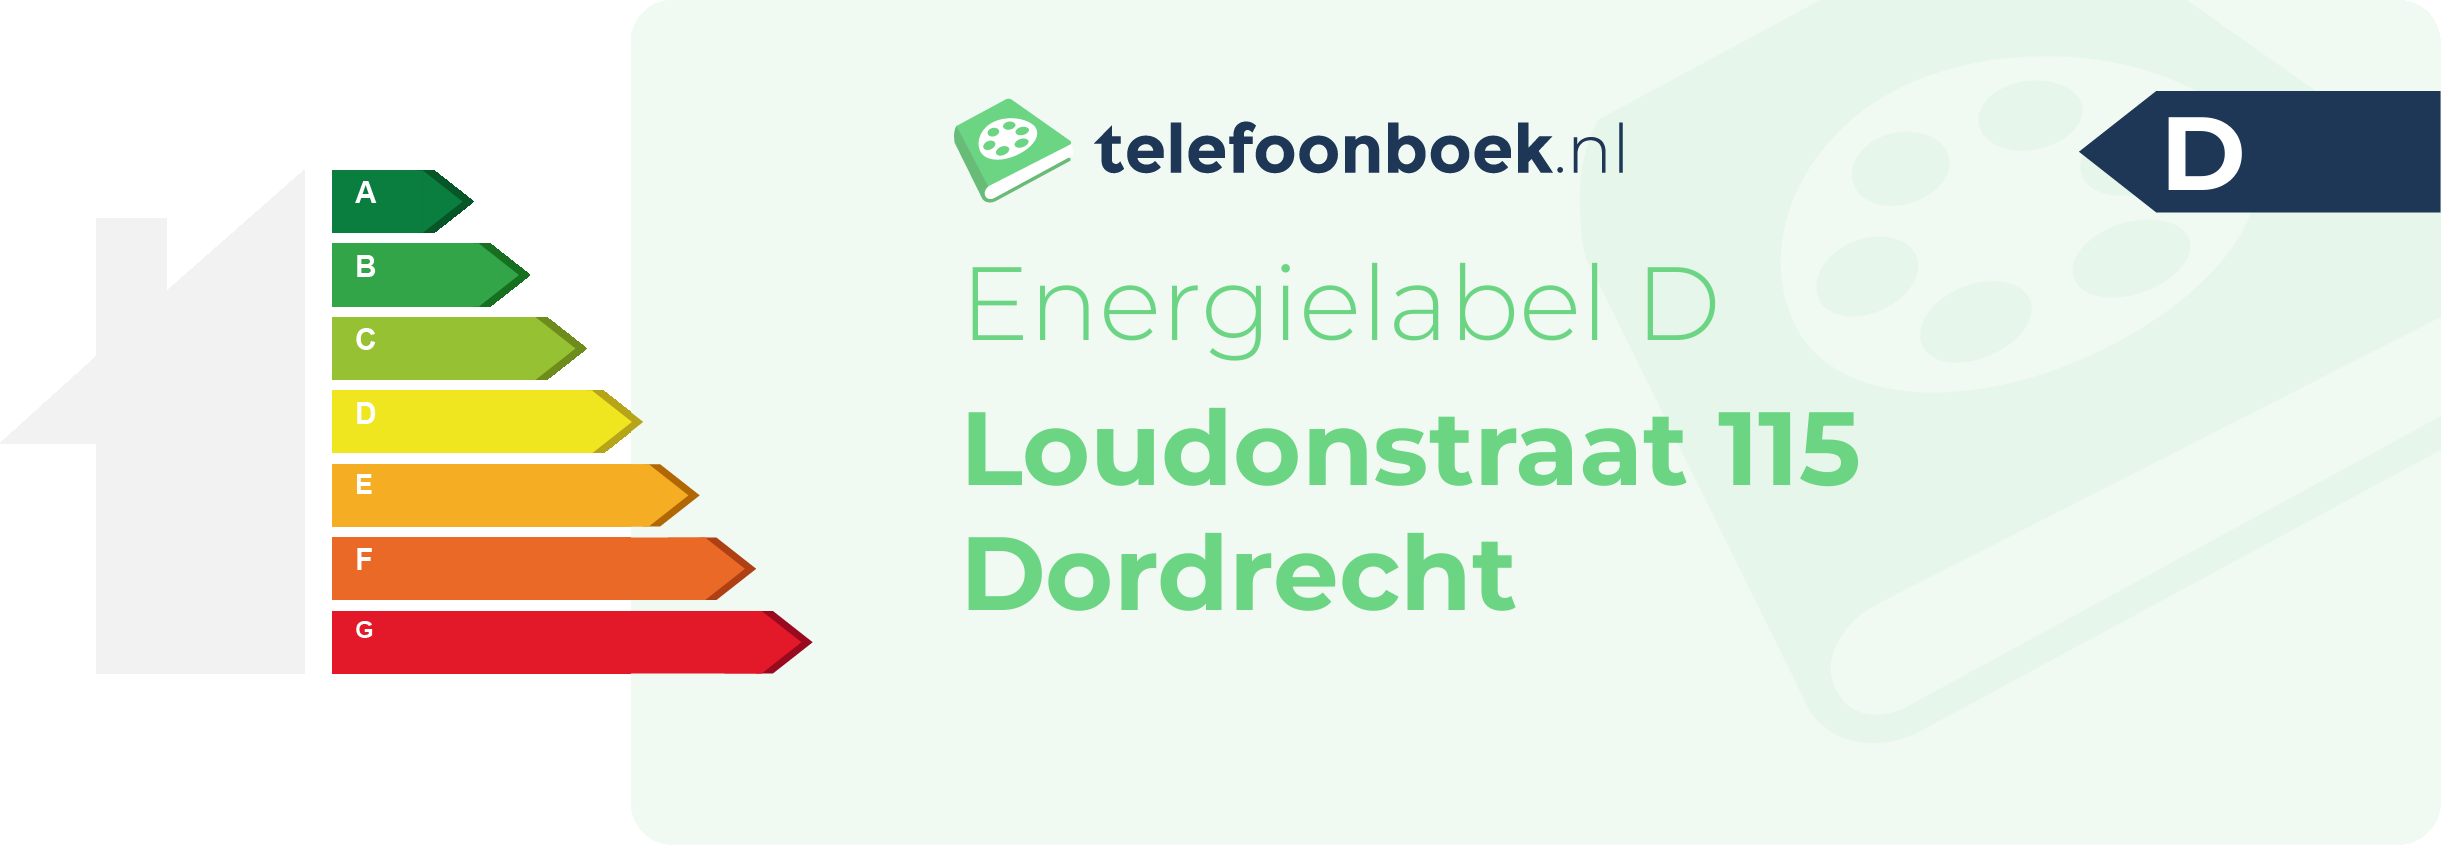 Energielabel Loudonstraat 115 Dordrecht